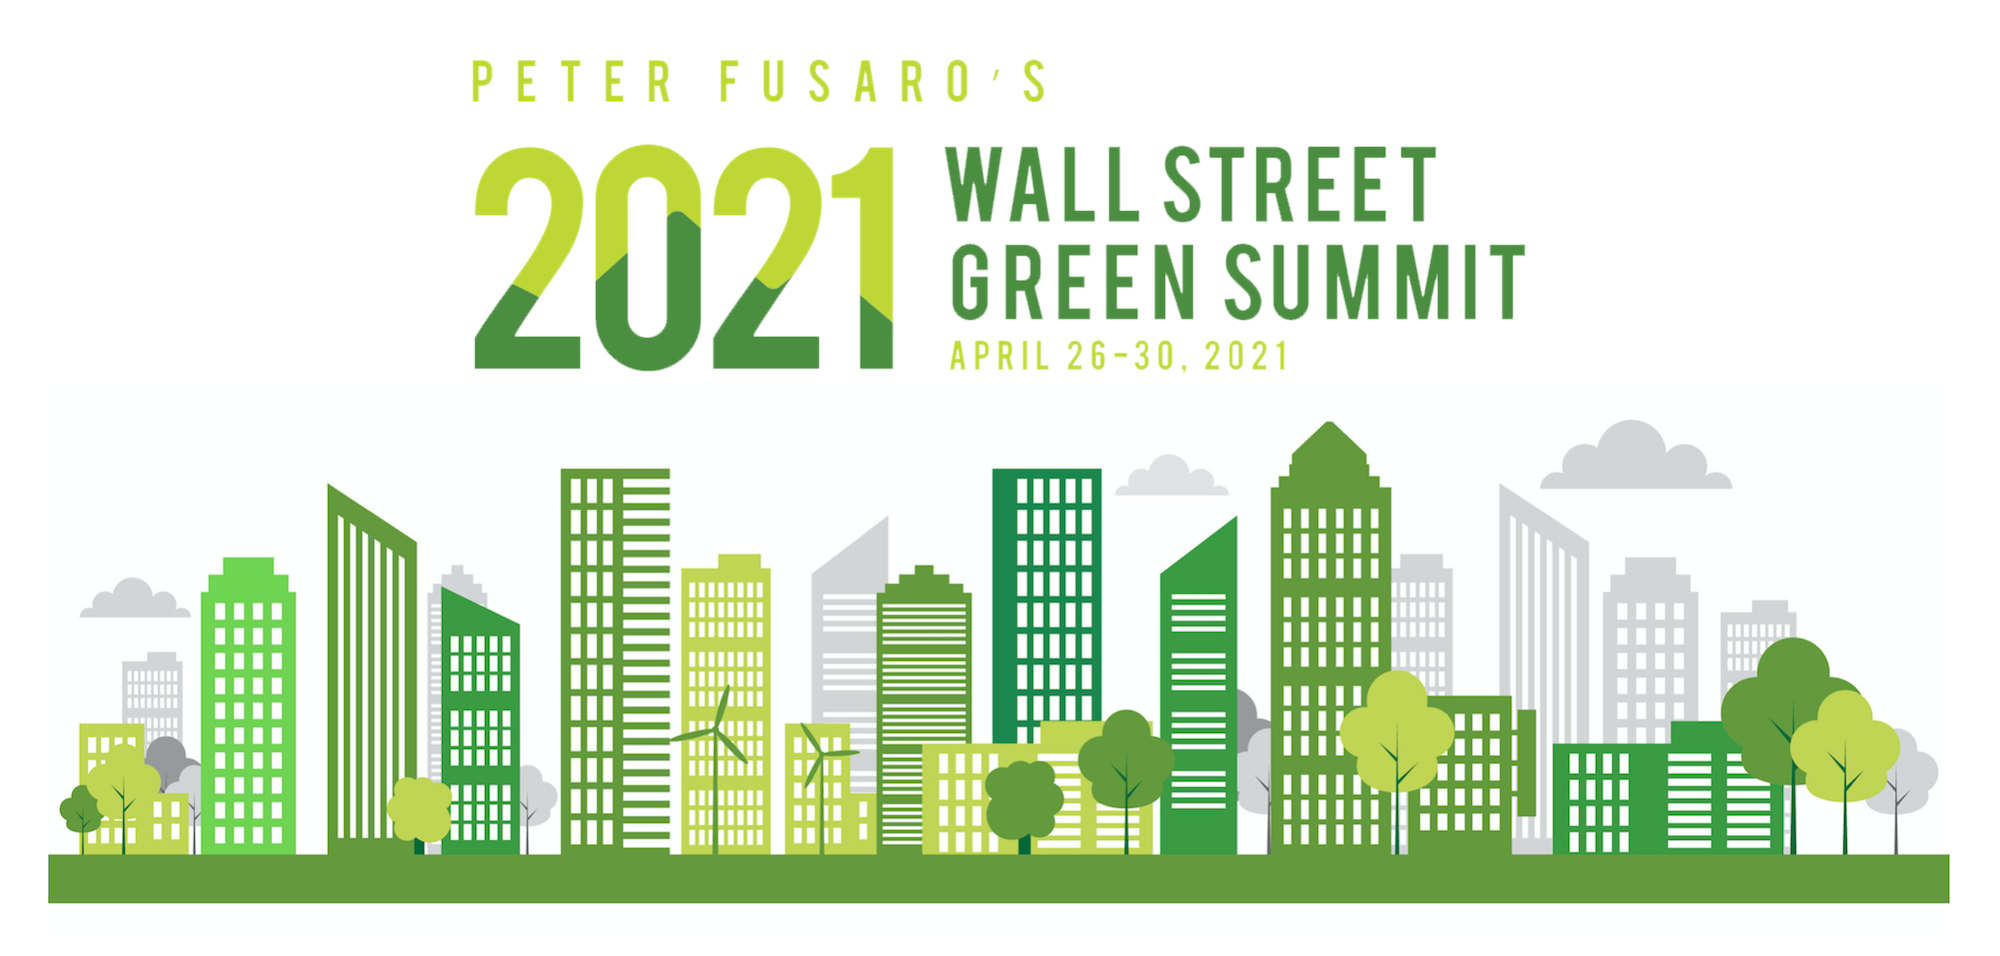 Wall Street Green Summit XX organized by Wall Street Green Summit